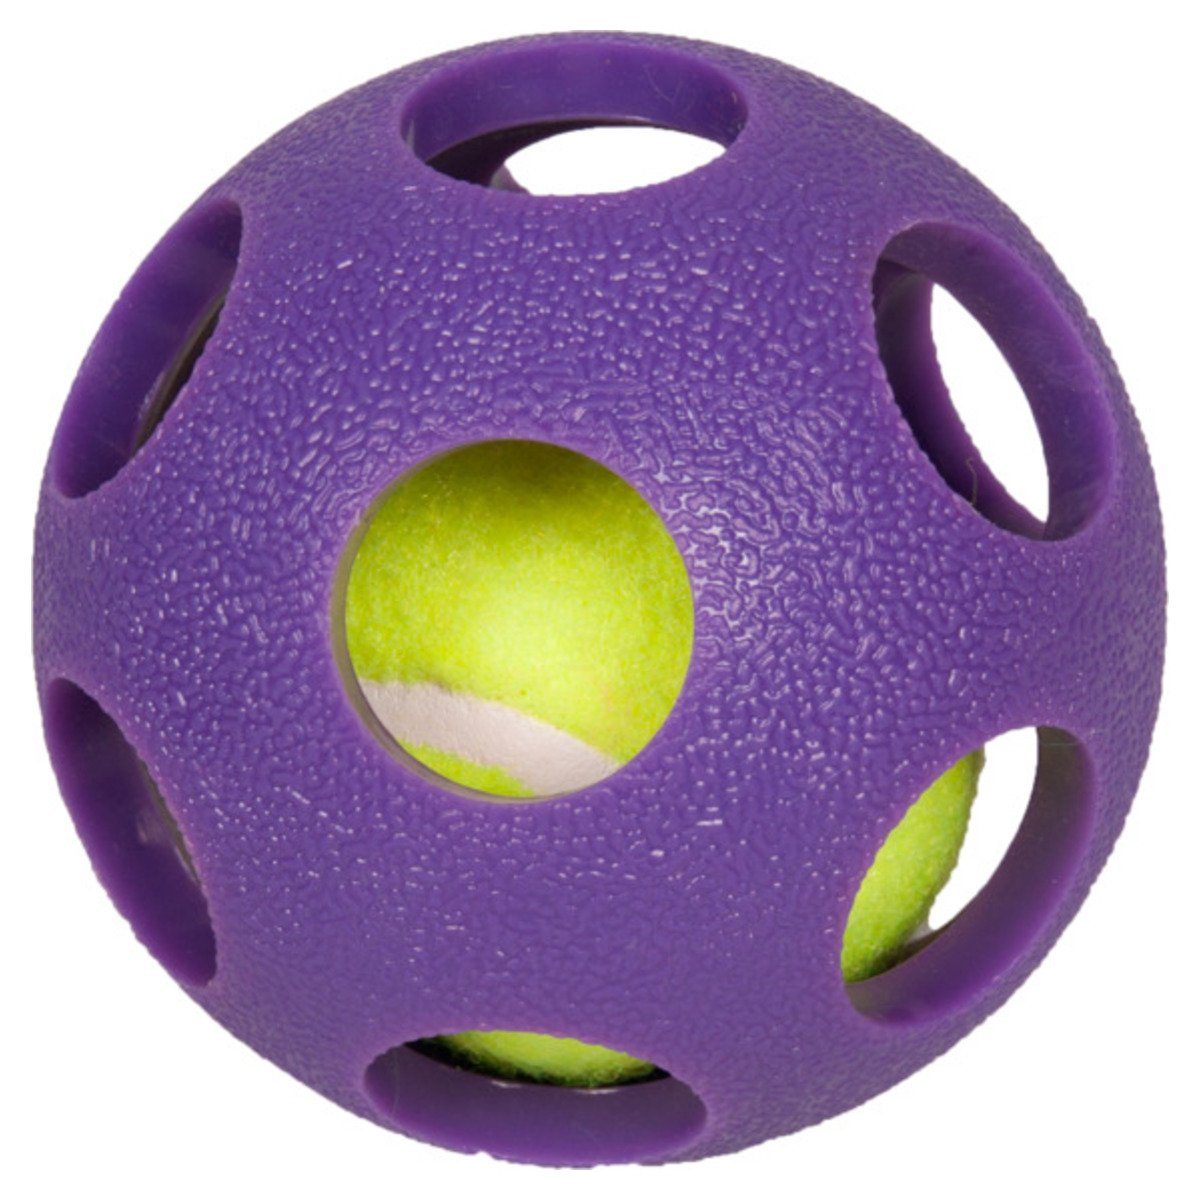 Karlie Spielknochen Hundespielzeug TPR Asteroid Ball, Durchmesser: 9 cm